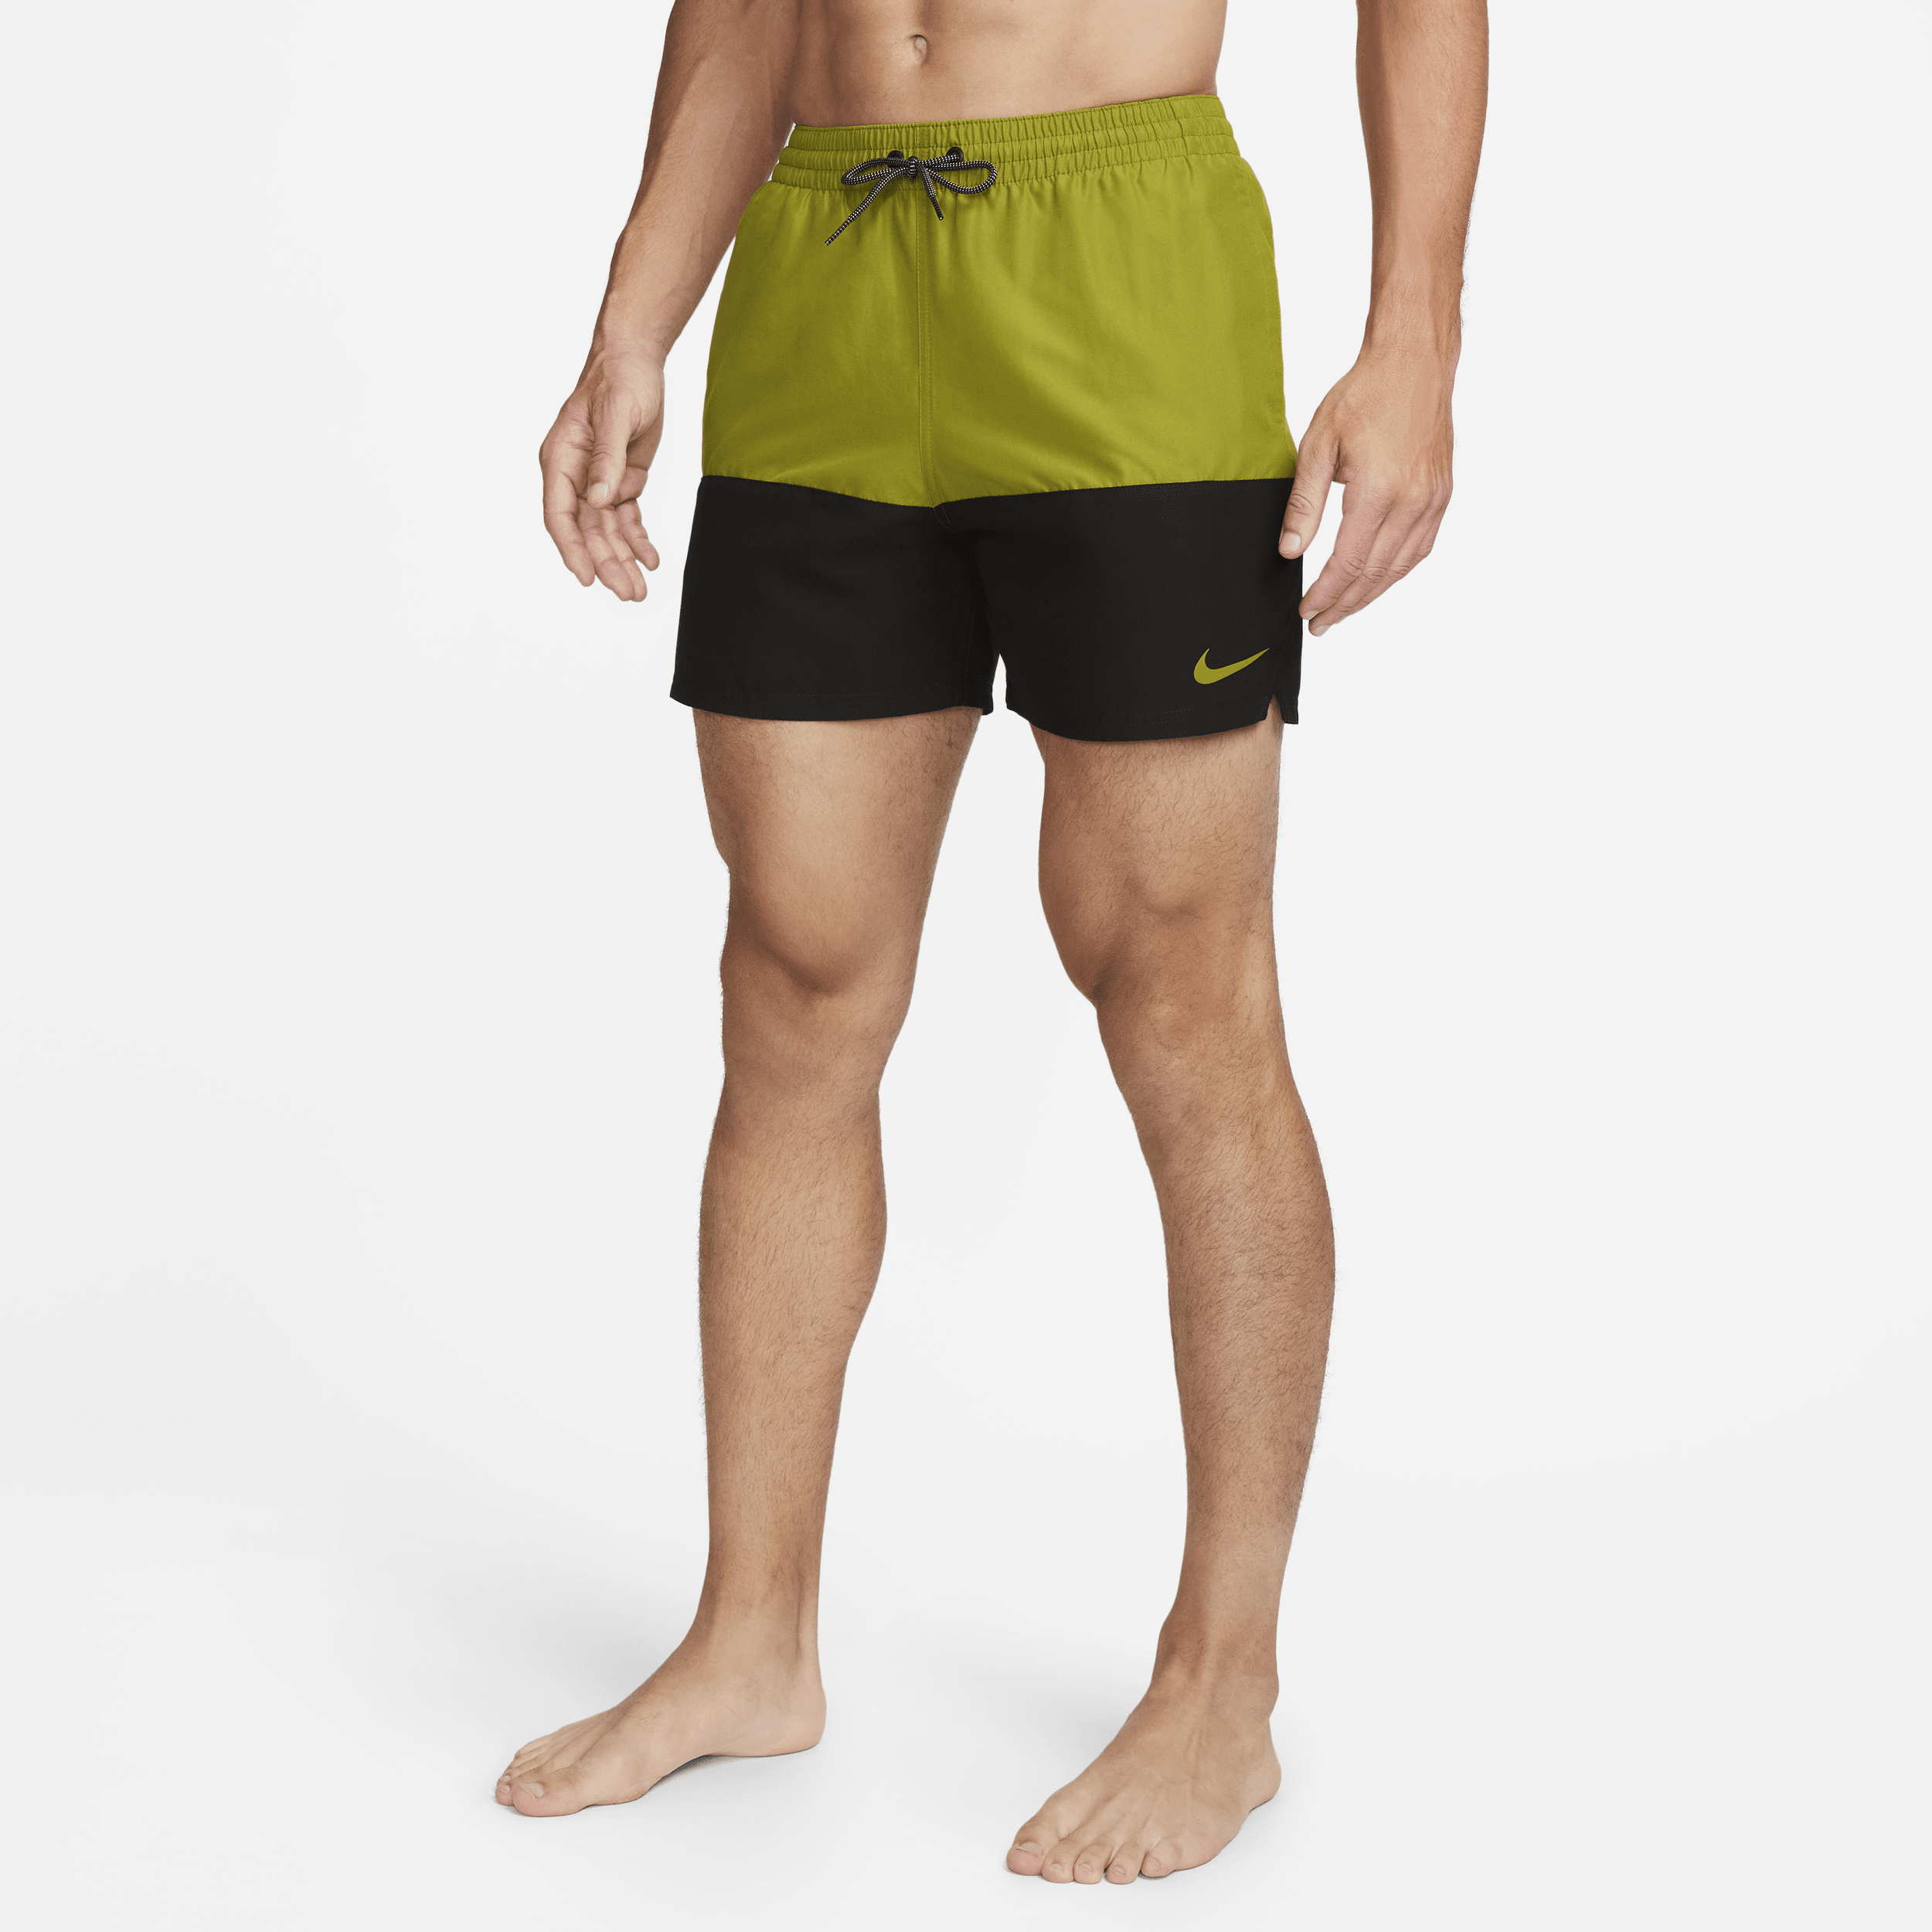 Nike Split-badebukser (13 cm) til mænd - grøn